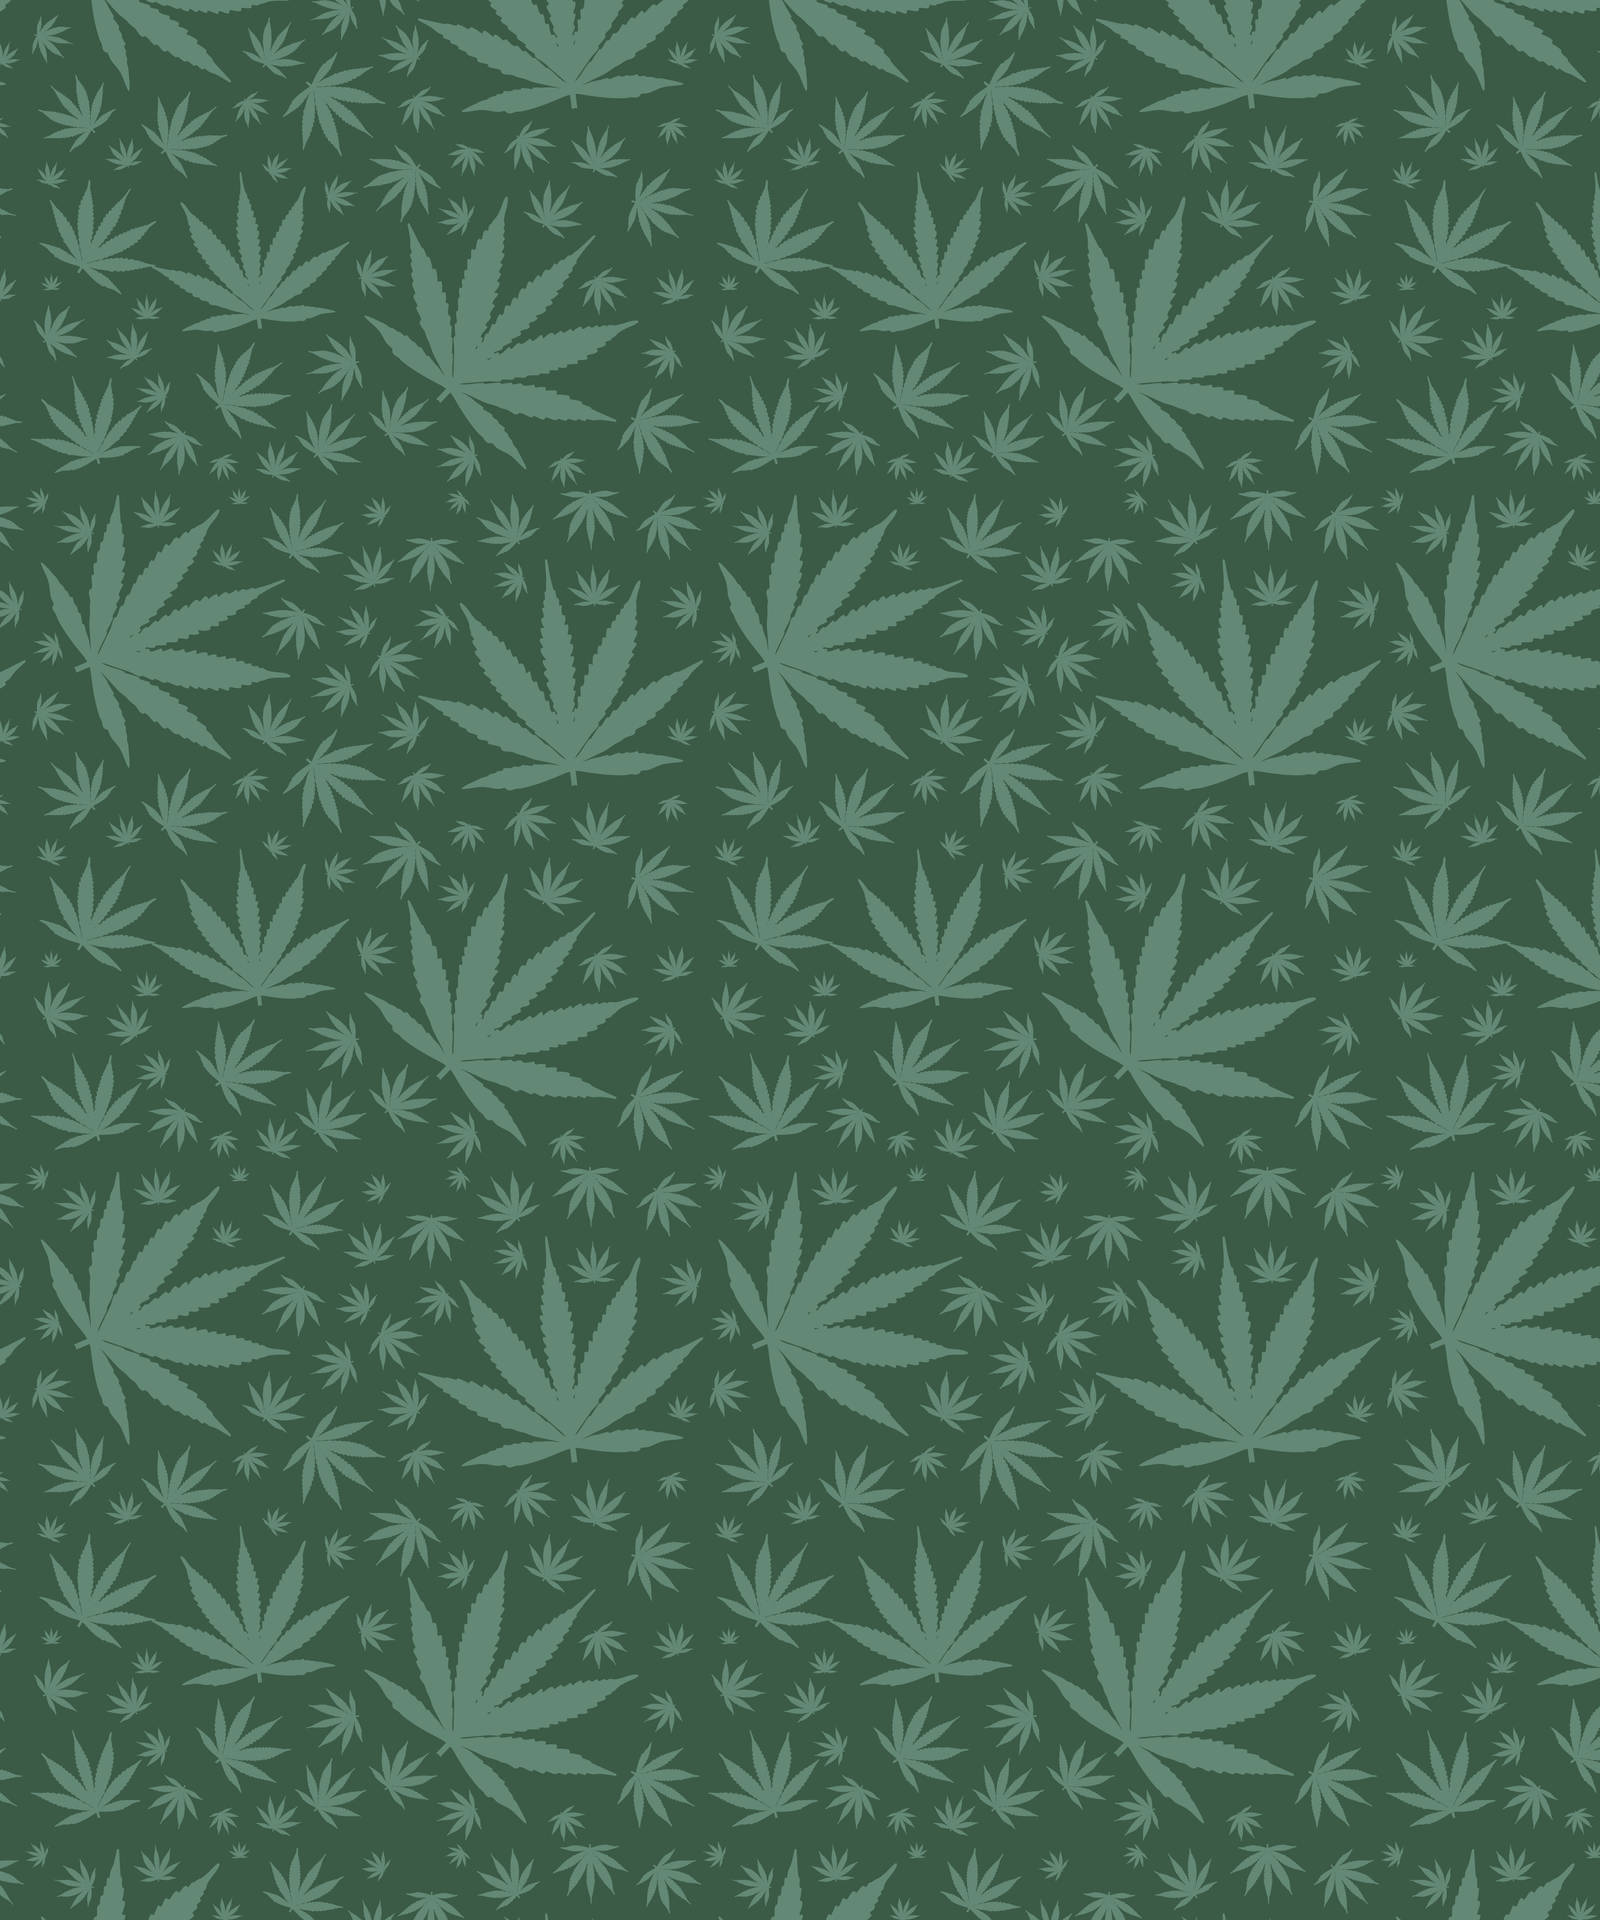 Allgrön Mobilbakgrund Med Växtbladsgrafik Wallpaper